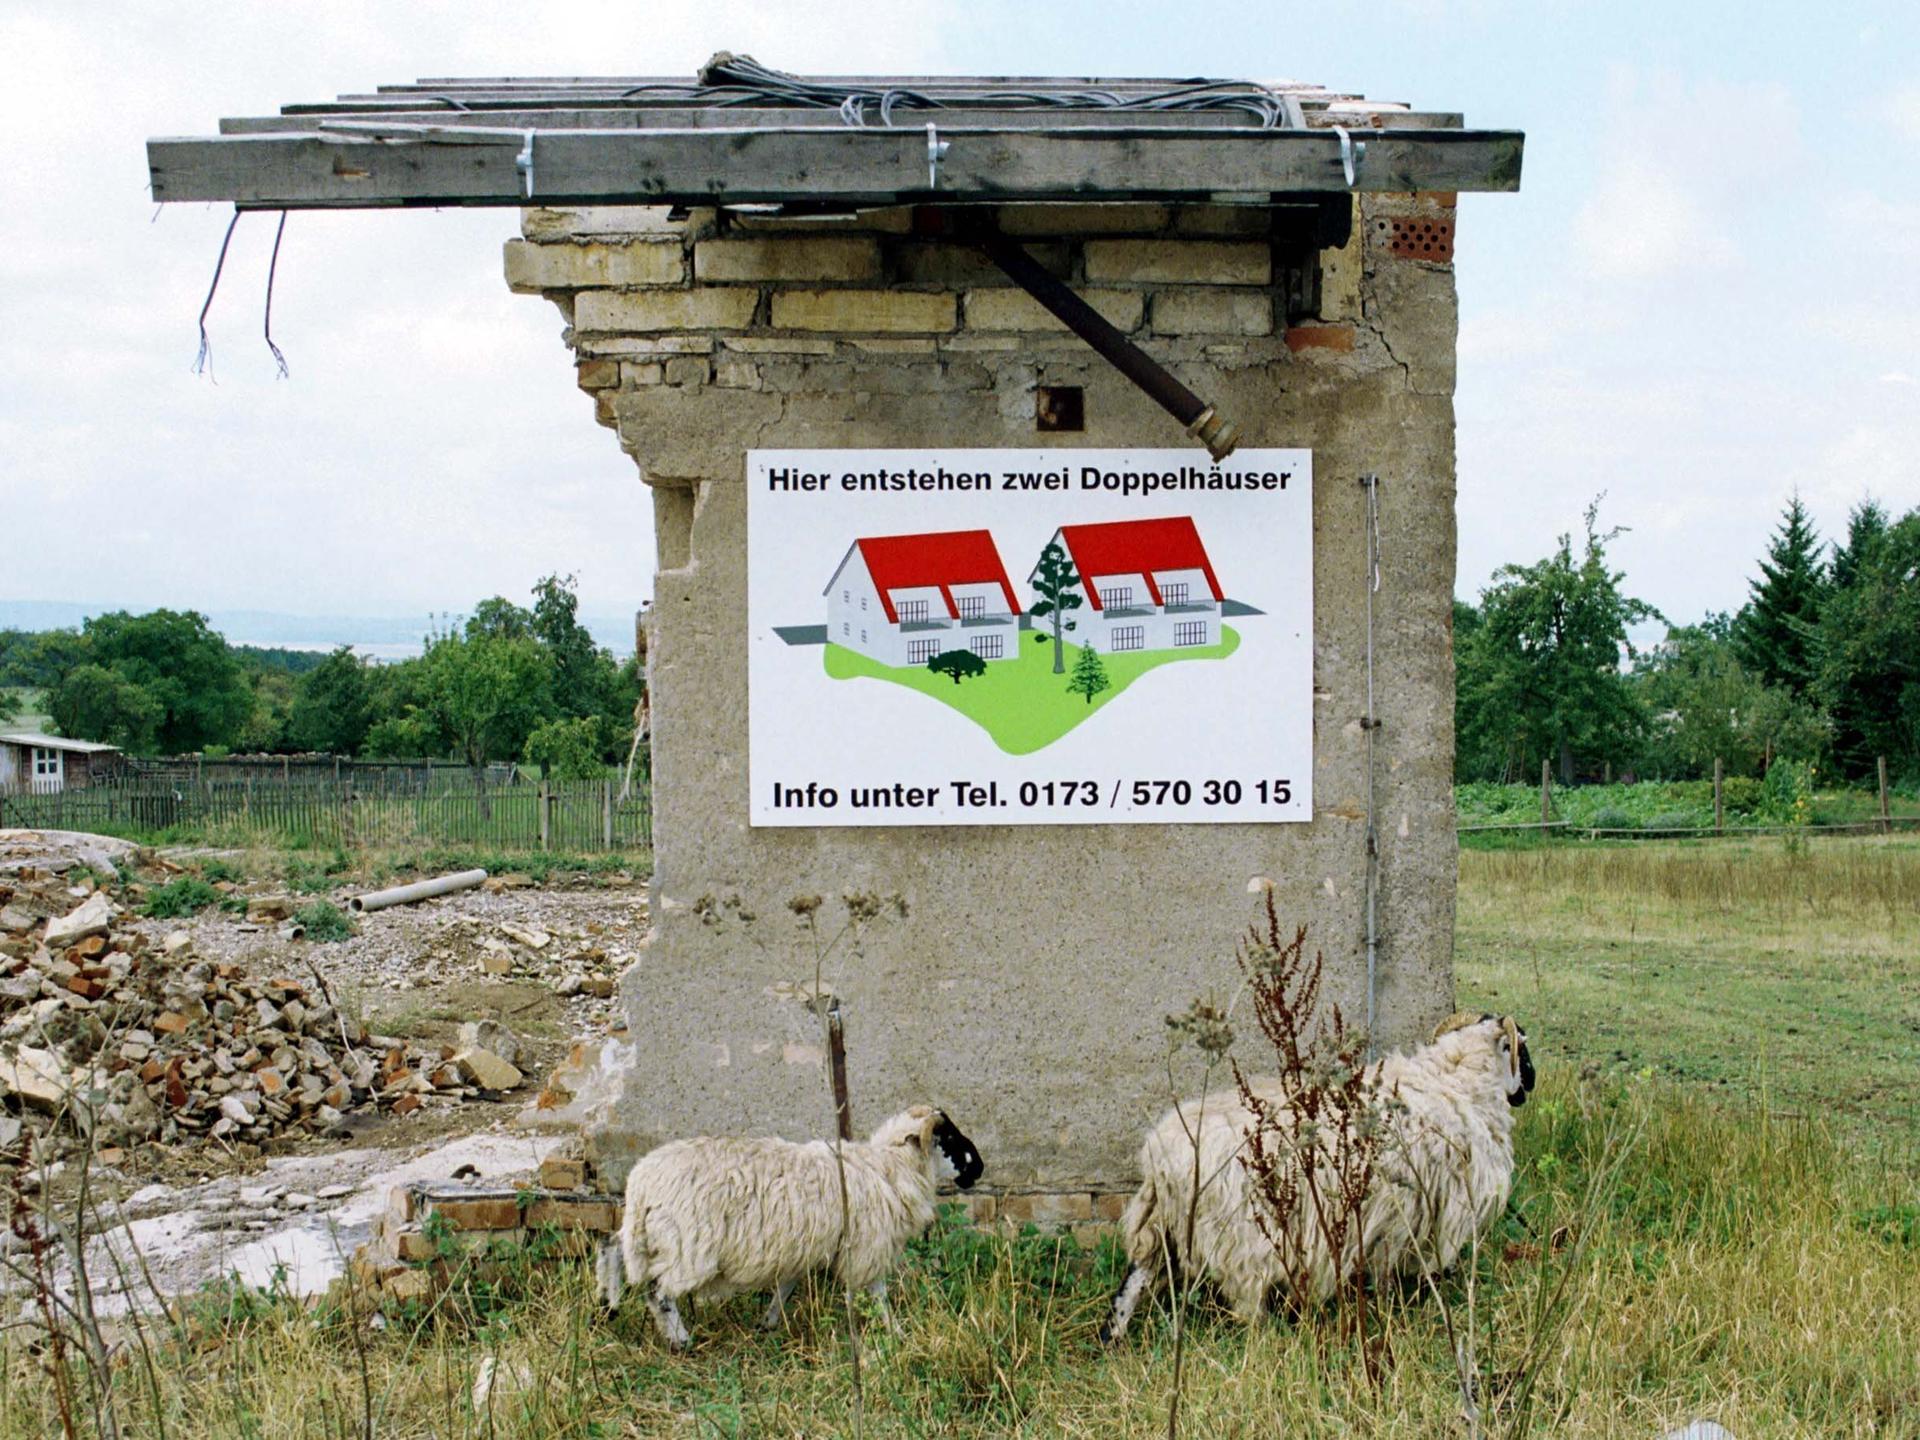 Zwei Schafe laufen vor einer Ruine im Dorf Riechheim/Thüringen. Das Werbeschild am Rest des Gebäudes verspricht den Bau von zwei Doppelhäusern im Jahr 2000.